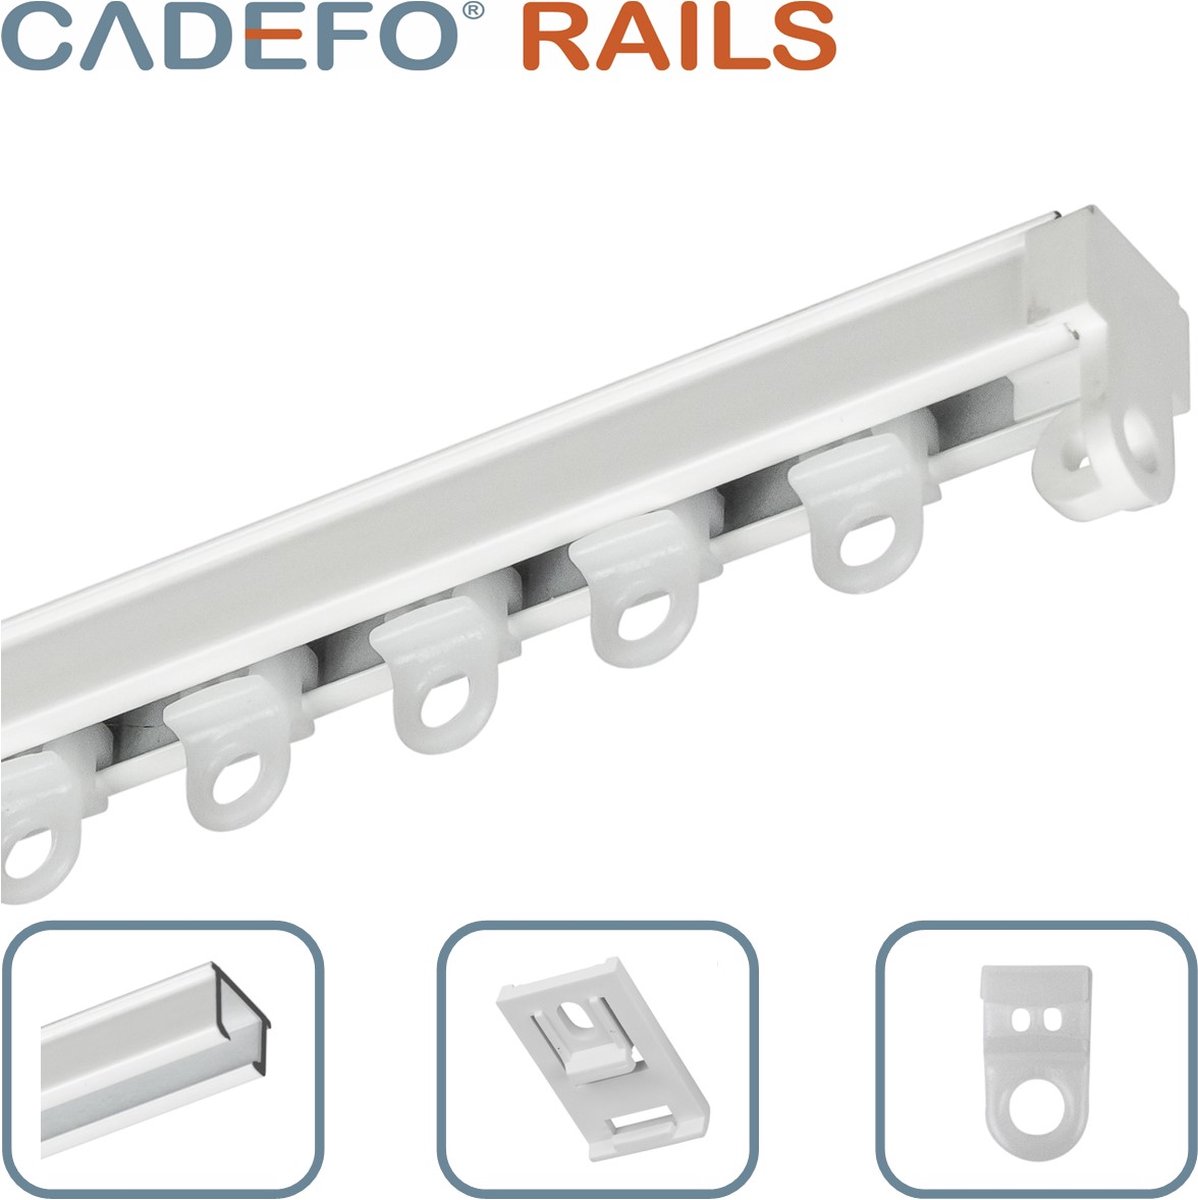 CADEFO RAILS (401 - 450 cm) Gordijnrails - Compleet op maat! - UIT 1 STUK - Leverbaar tot 6 meter - Plafondbevestiging - Lengte 449 cm